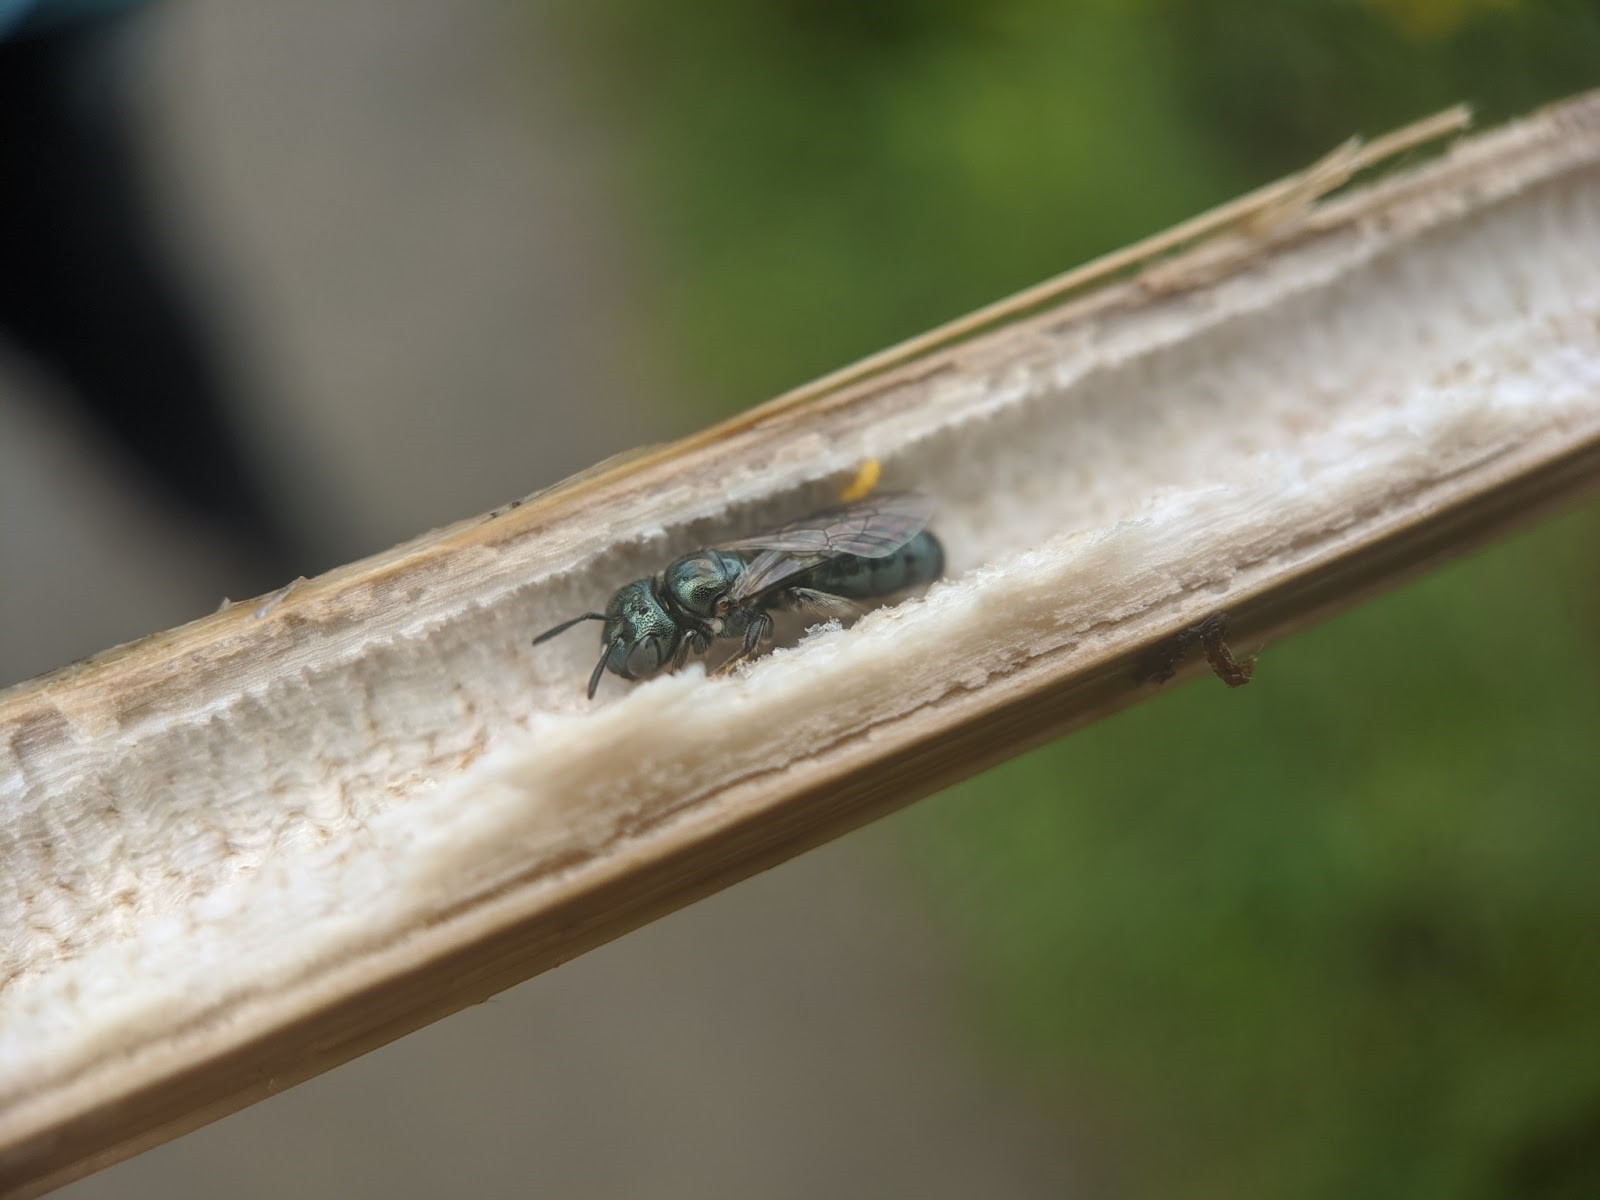 A Small Carpenter Bee (Genus Ceratina), inside a hollow plant stem. © Spencer Hardy